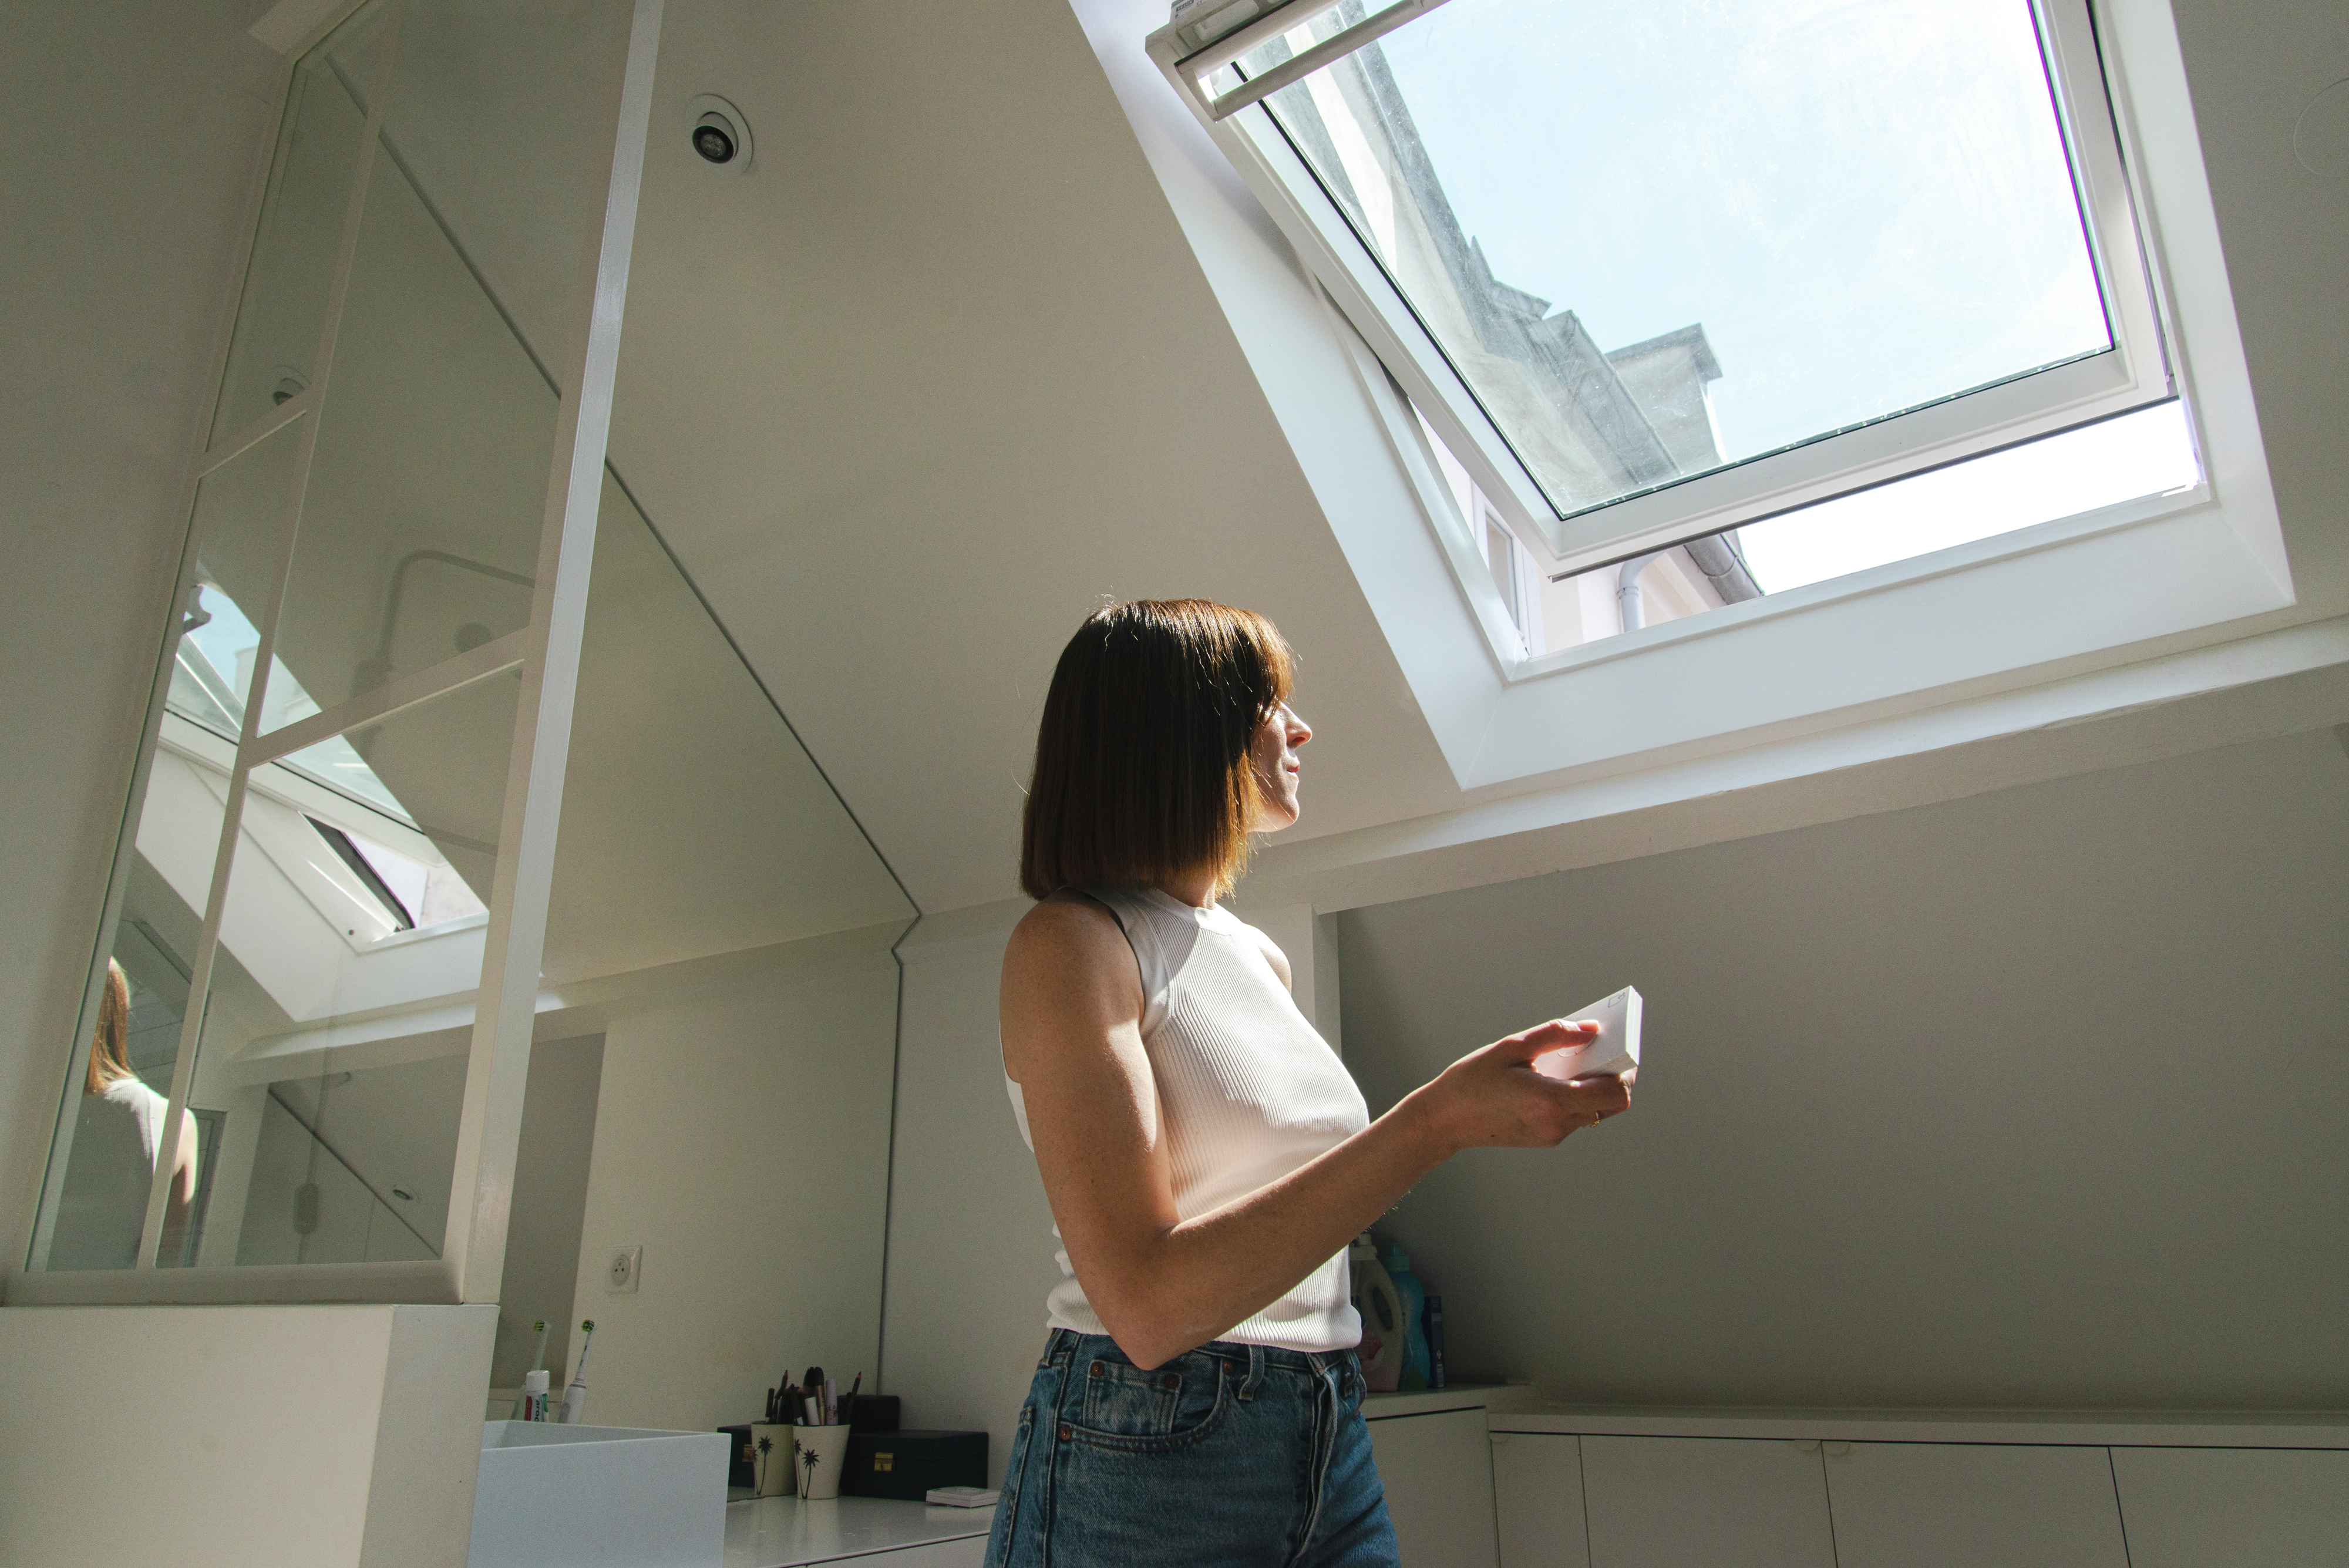 Une femme admire la vue extérieure à travers une fenêtre de toit Velux ouverte, illuminant une pièce mansardée moderne et spacieuse. Cette description met en évidence l’importance de la fenêtre Velux dans le confort intérieur et l’éclairage naturel extérieur.